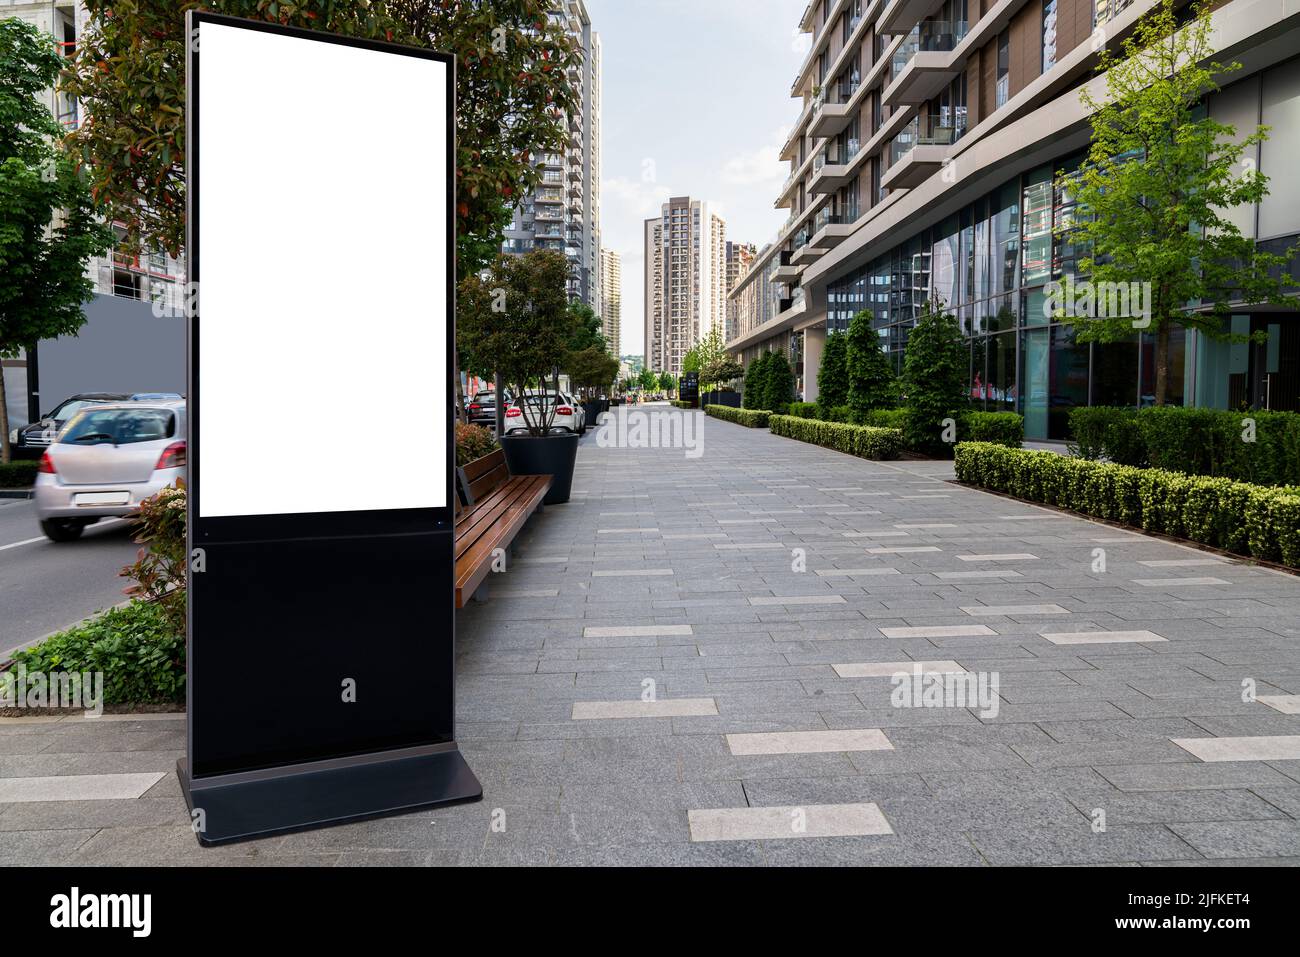 Valla de pantalla LCD para publicidad en exteriores en la calle de una ciudad. Pantalla blanca, puede insertar la imagen aquí. Foto de stock